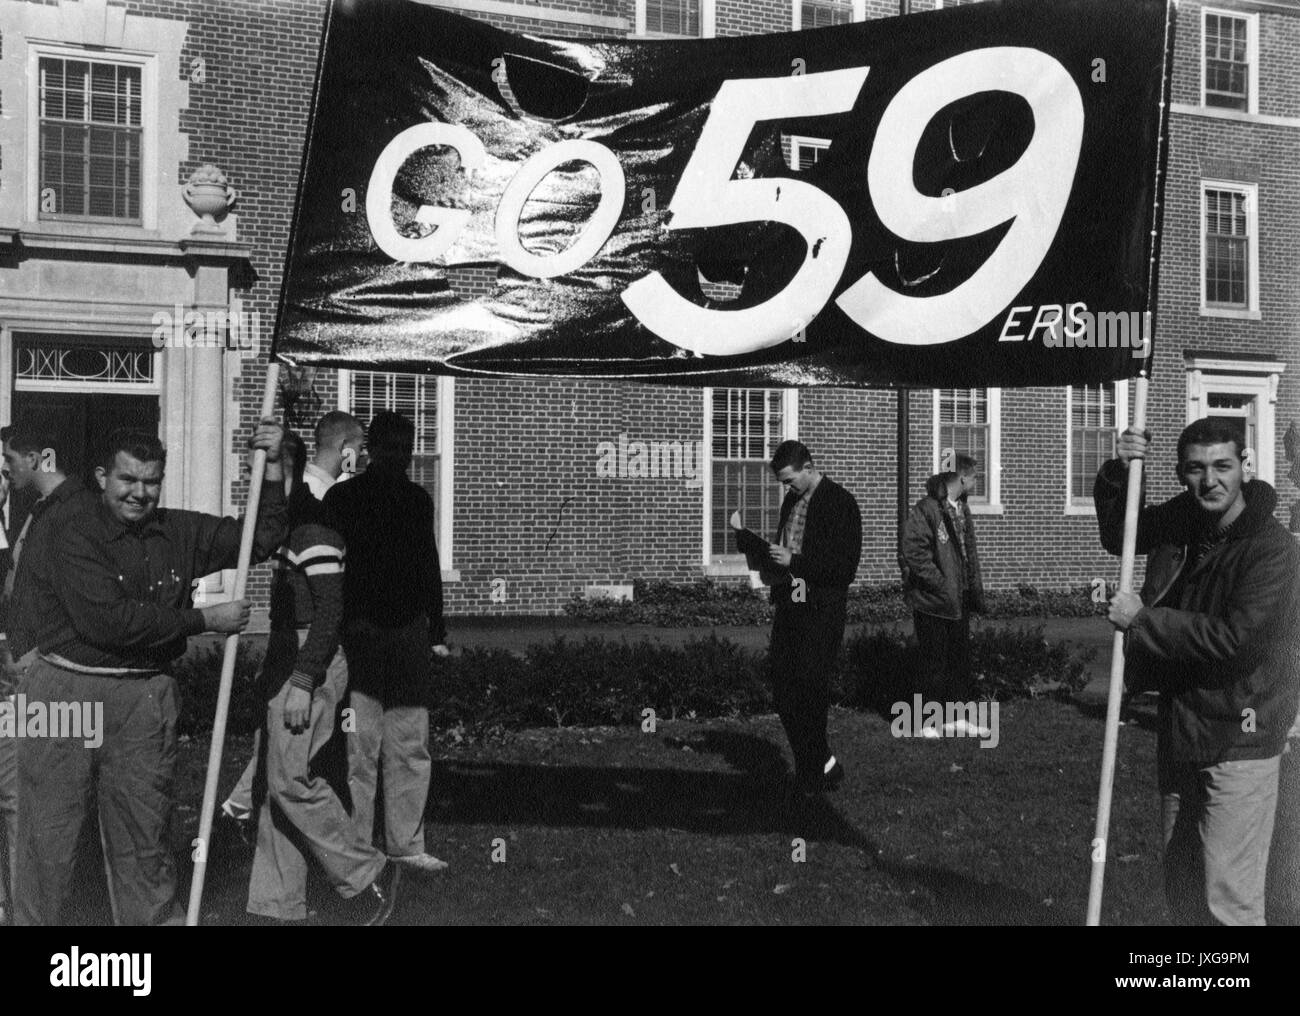 La vie étudiante deux freshmen sont porteurs du rendez-vous 59ers freshmen banner, 1955. Banque D'Images